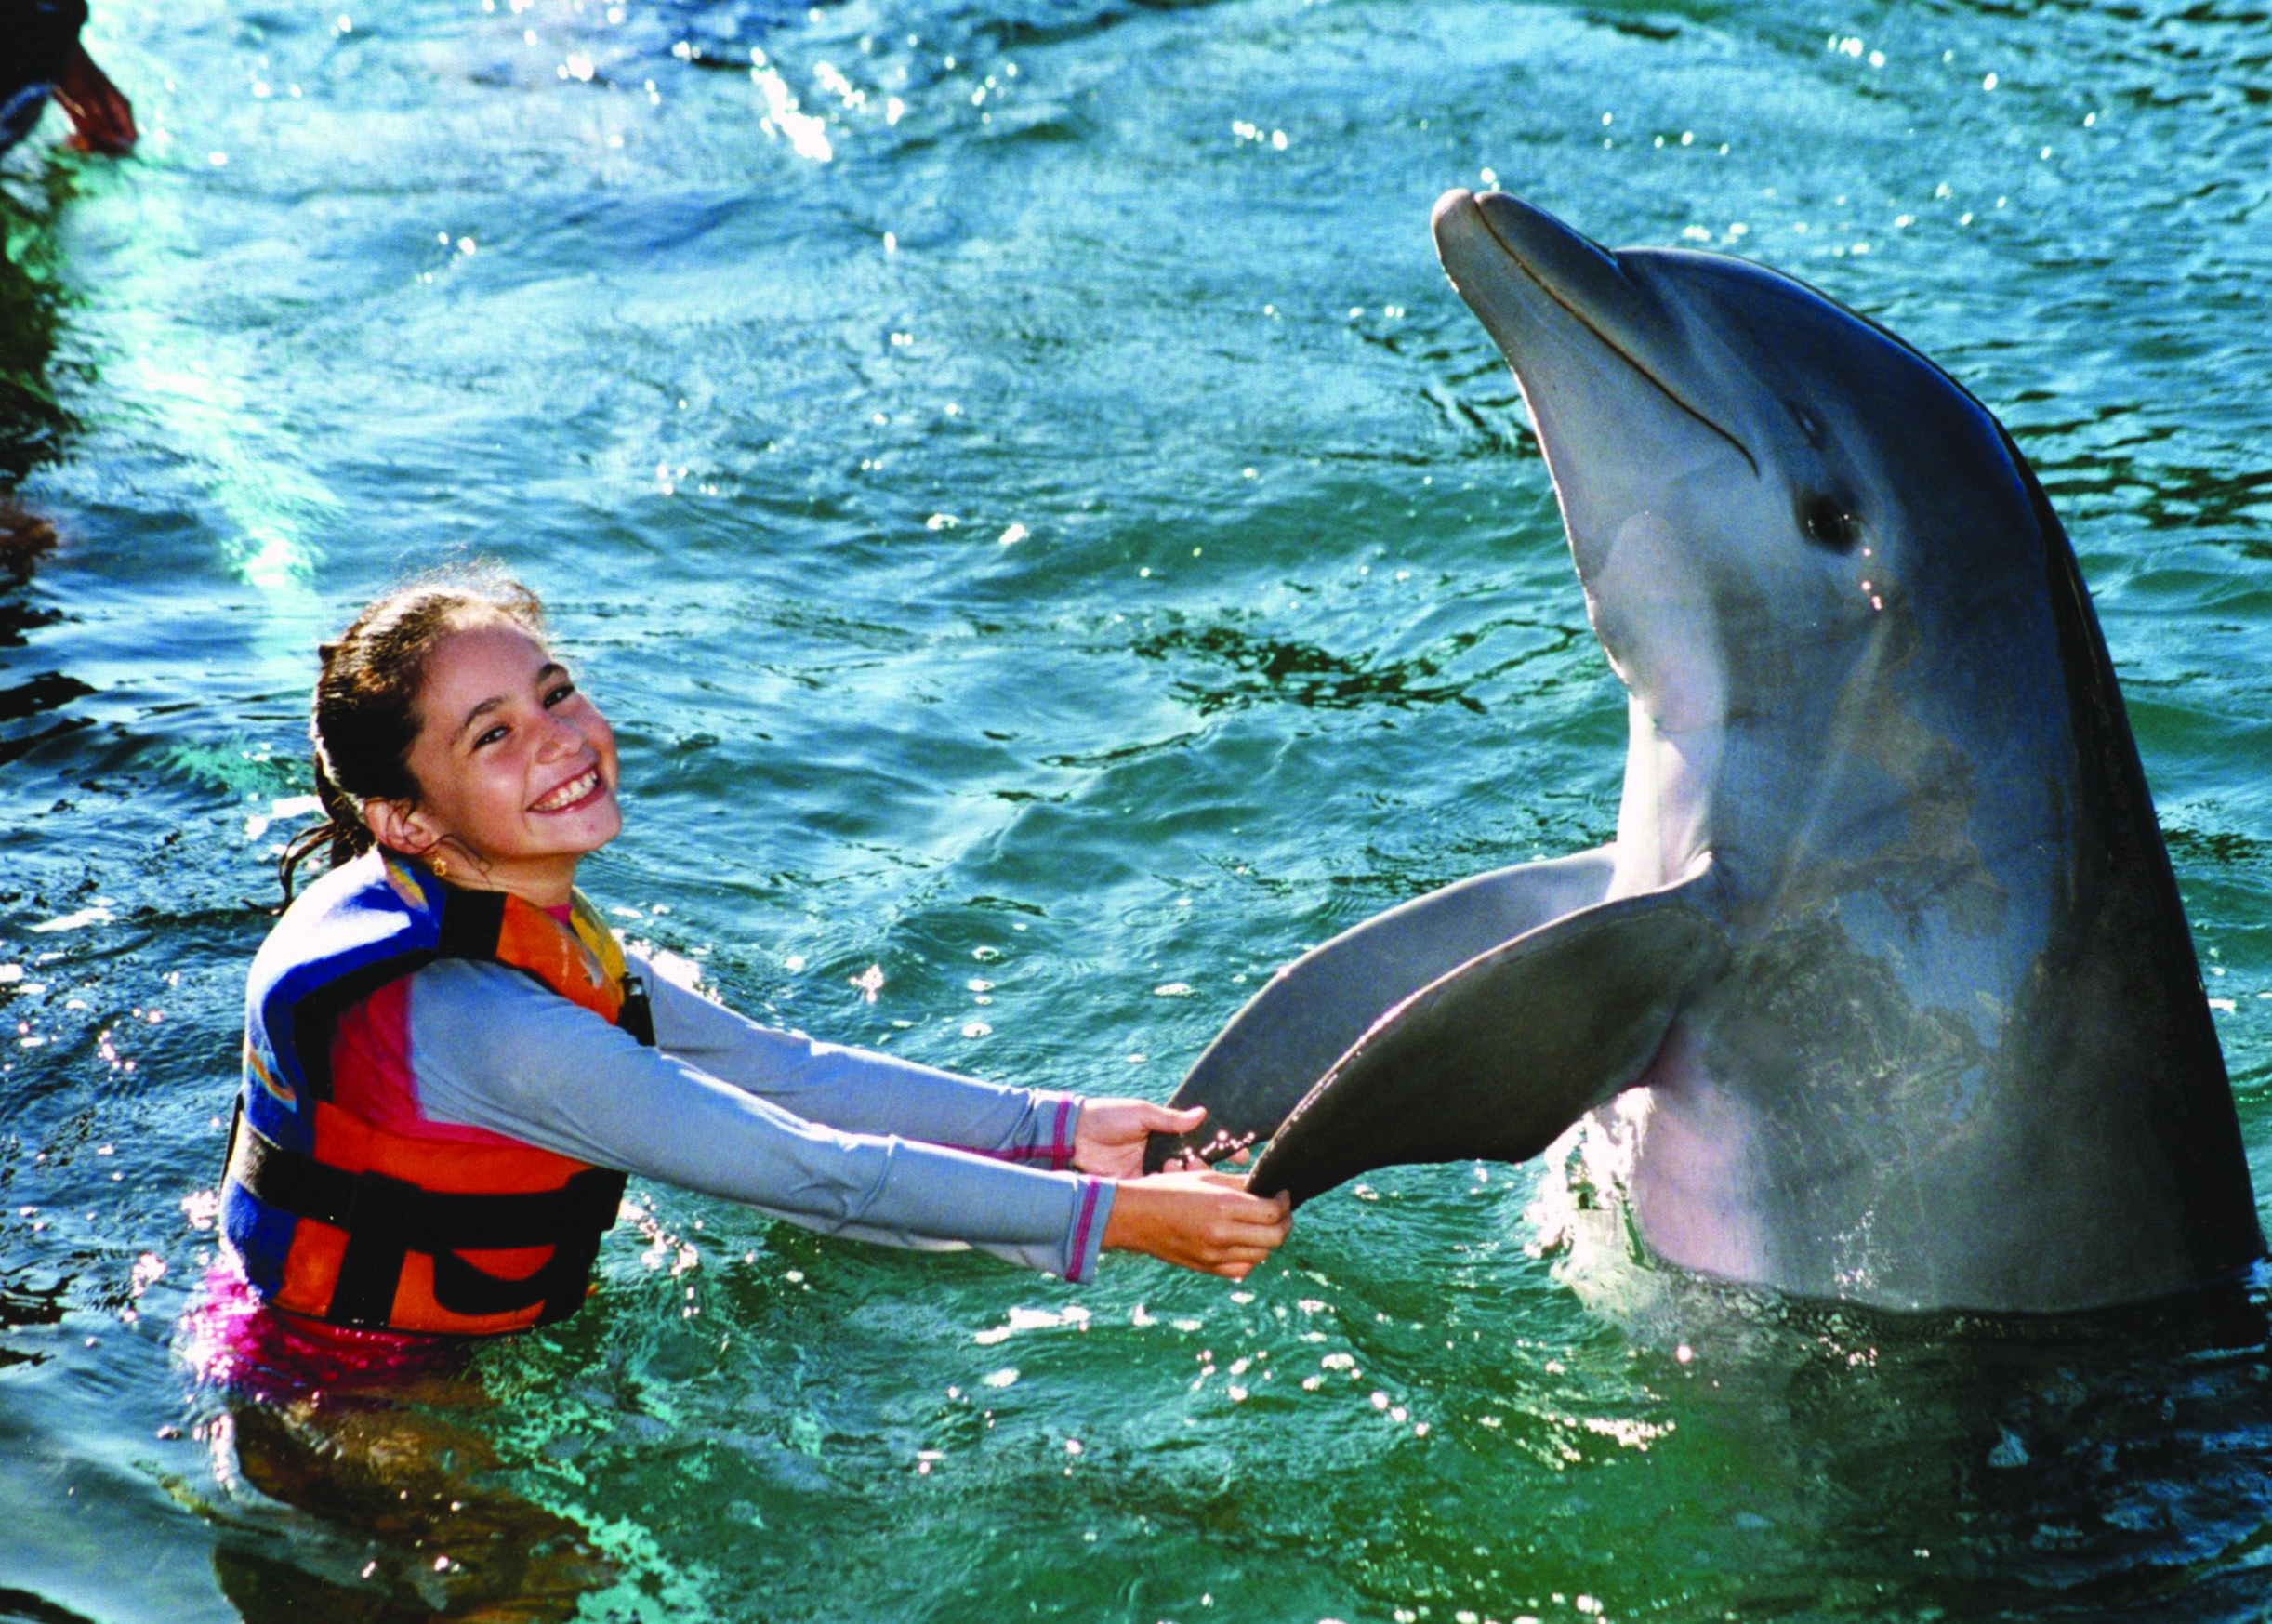 Dolphin handshake Image